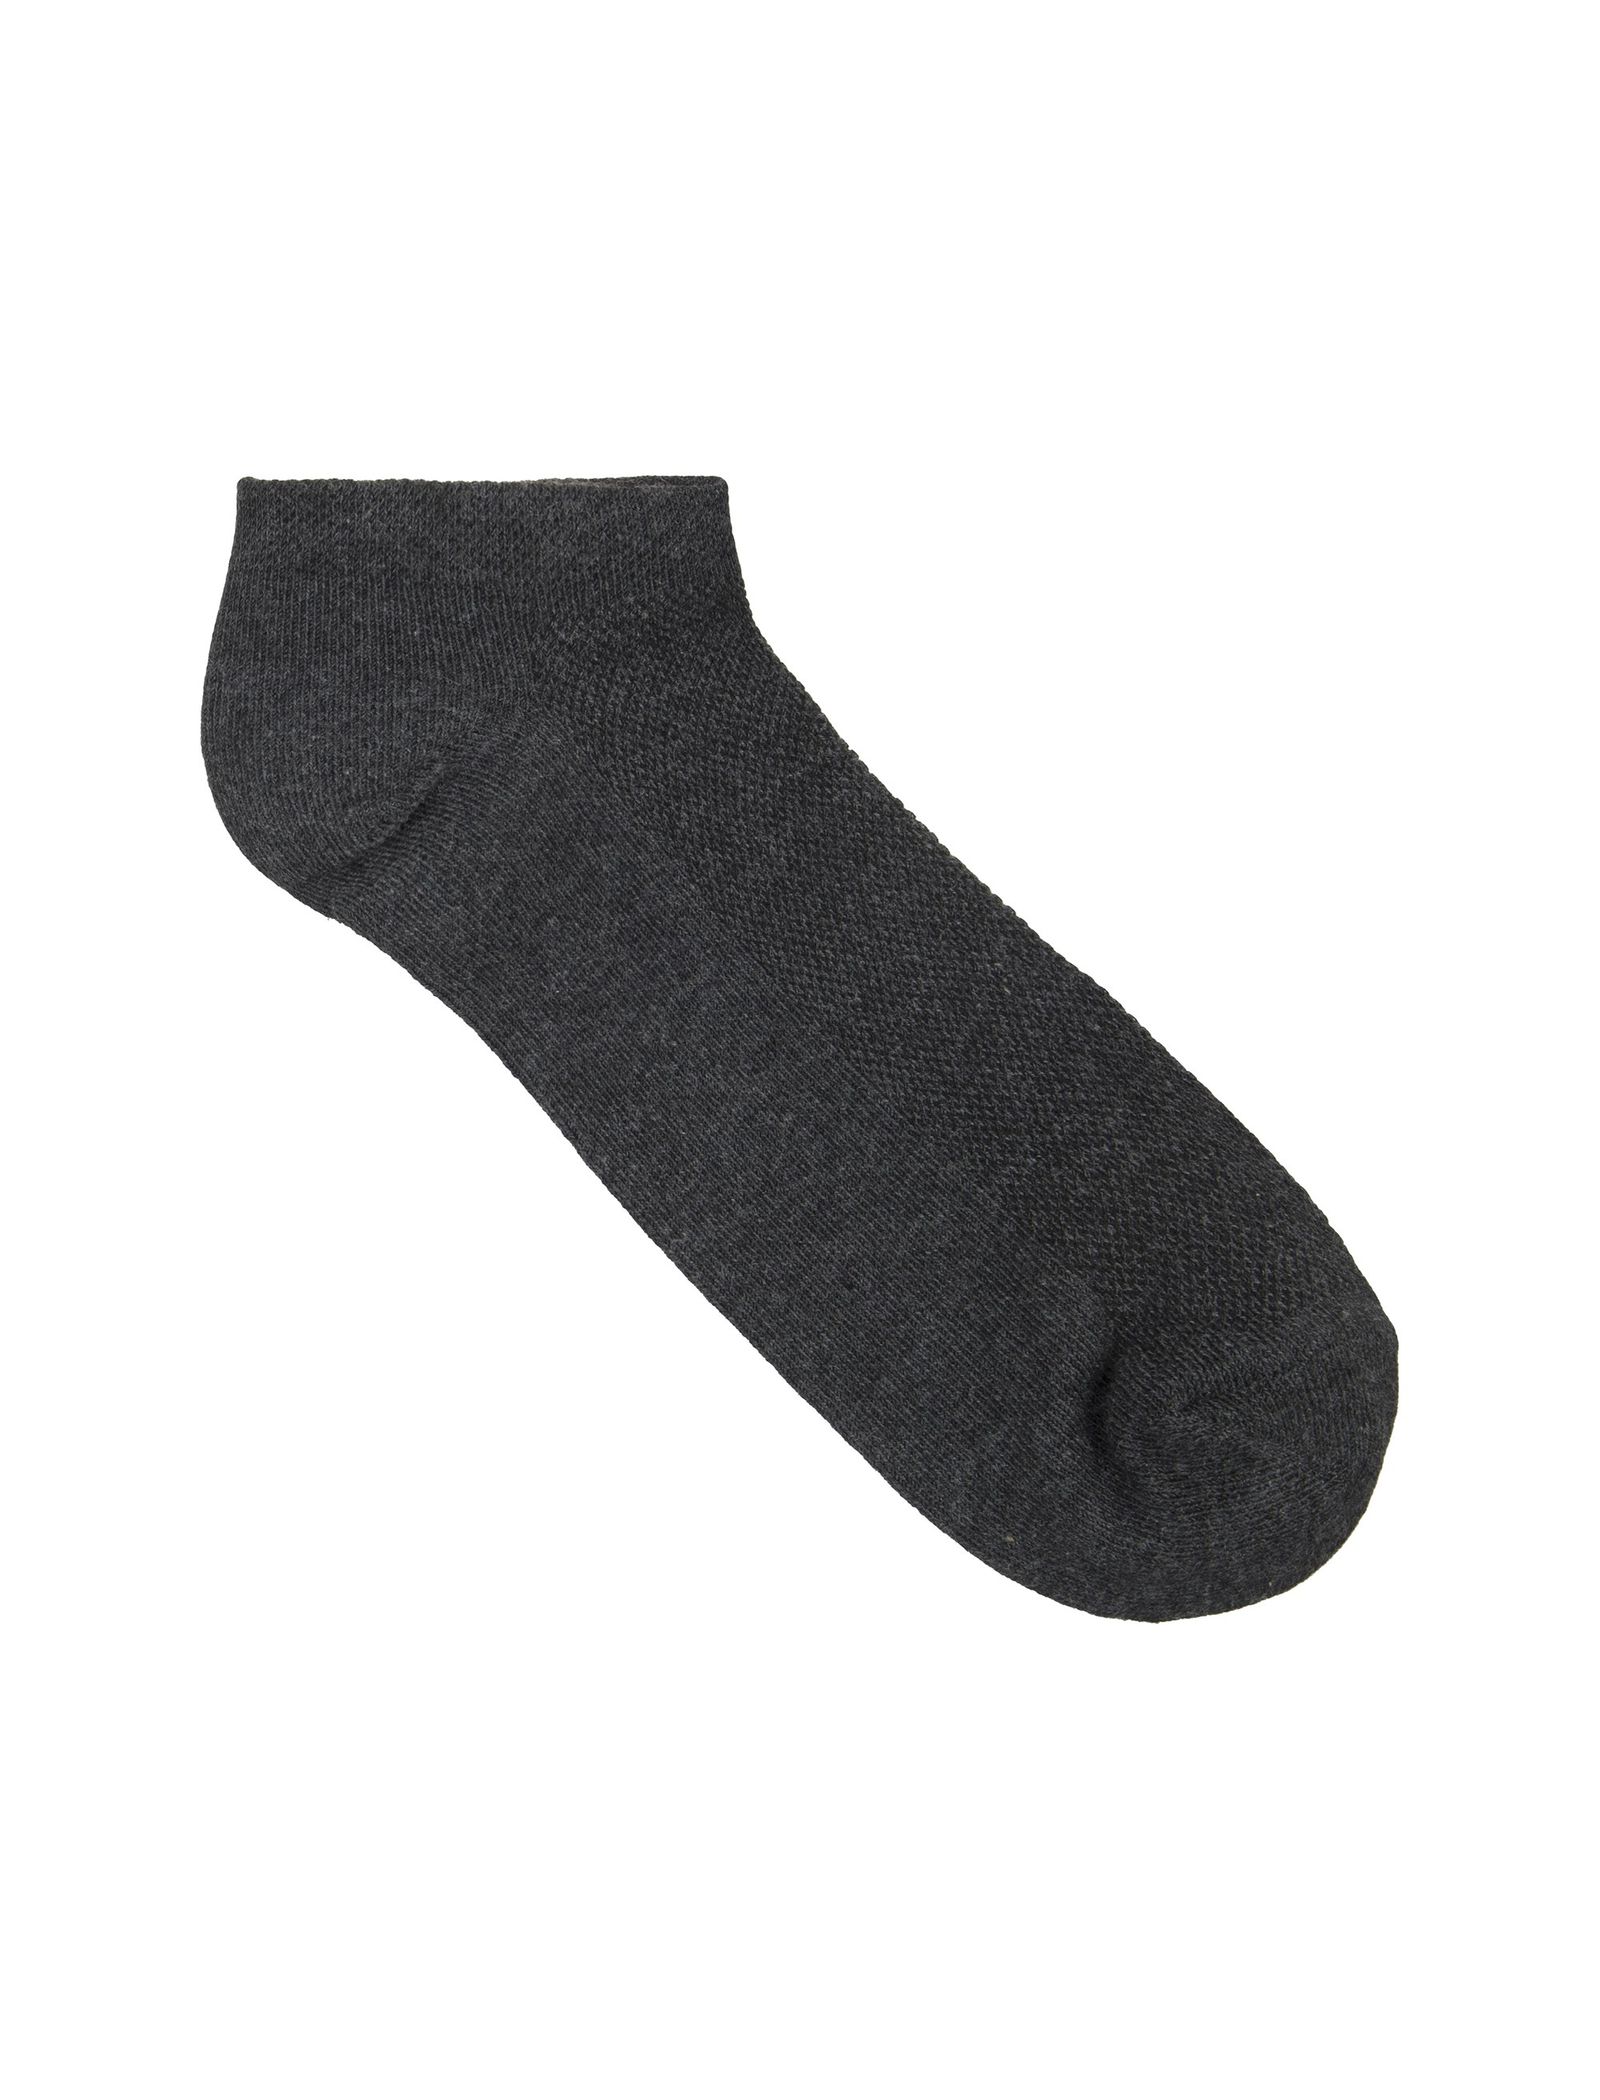 جوراب نخی بدون ساق مردانه بسته 3 عددی - مادام کوکو - طوسي/سرمه اي/زغالي - 8